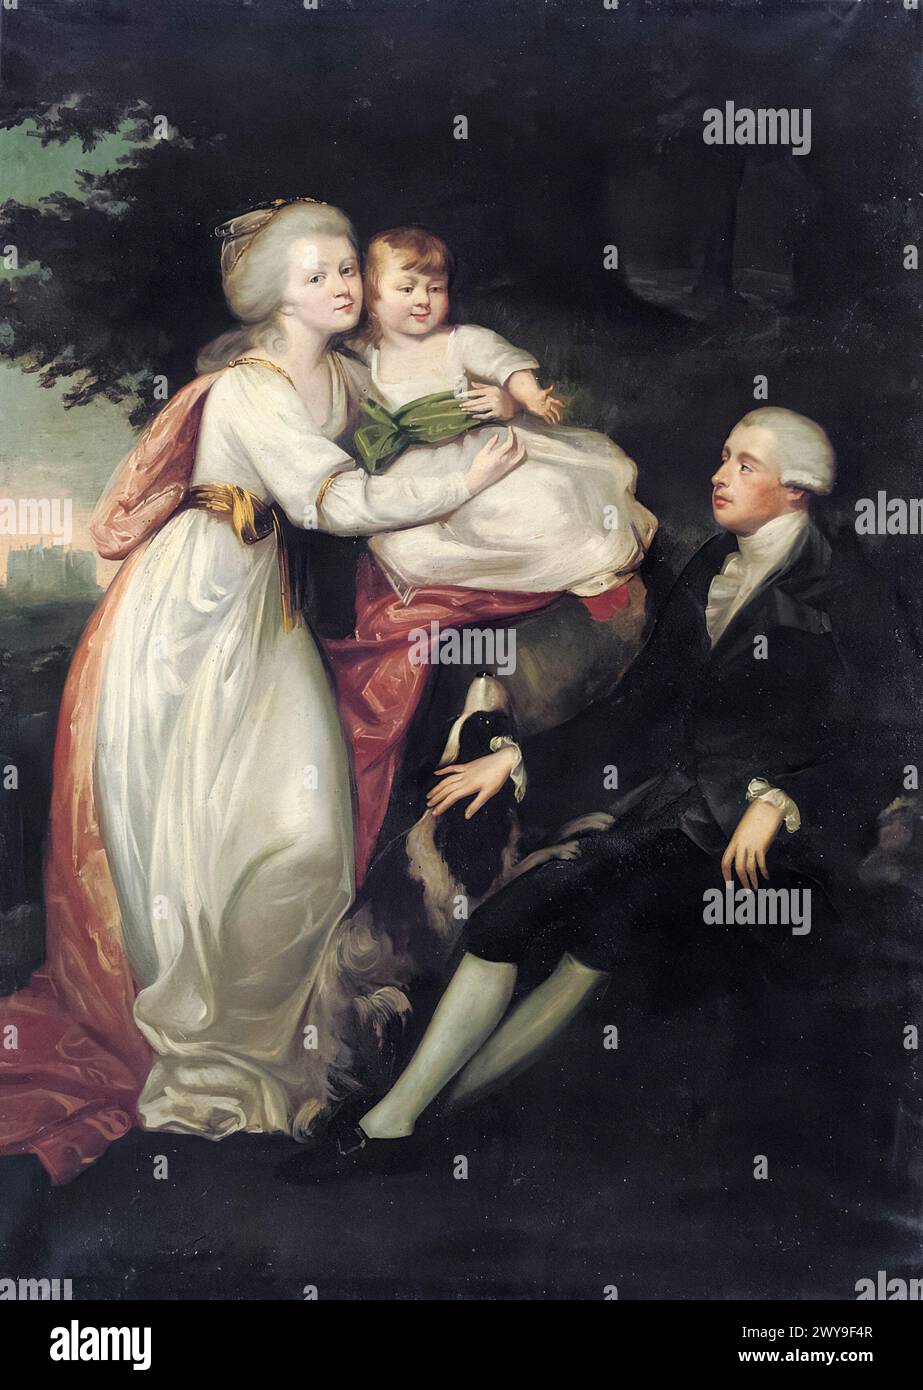 Frederick, Lord North, 2. Earl of Guilford (1732–1792), Premierminister von Großbritannien, 1770–1782, in einem Familienporträt mit seiner Frau Anne und seinem Kind, möglicherweise George Augustus, in einer Landschaft, Wroxton Abbey Beyond, Porträt in Öl auf Leinwand, 1760-1769 Stockfoto